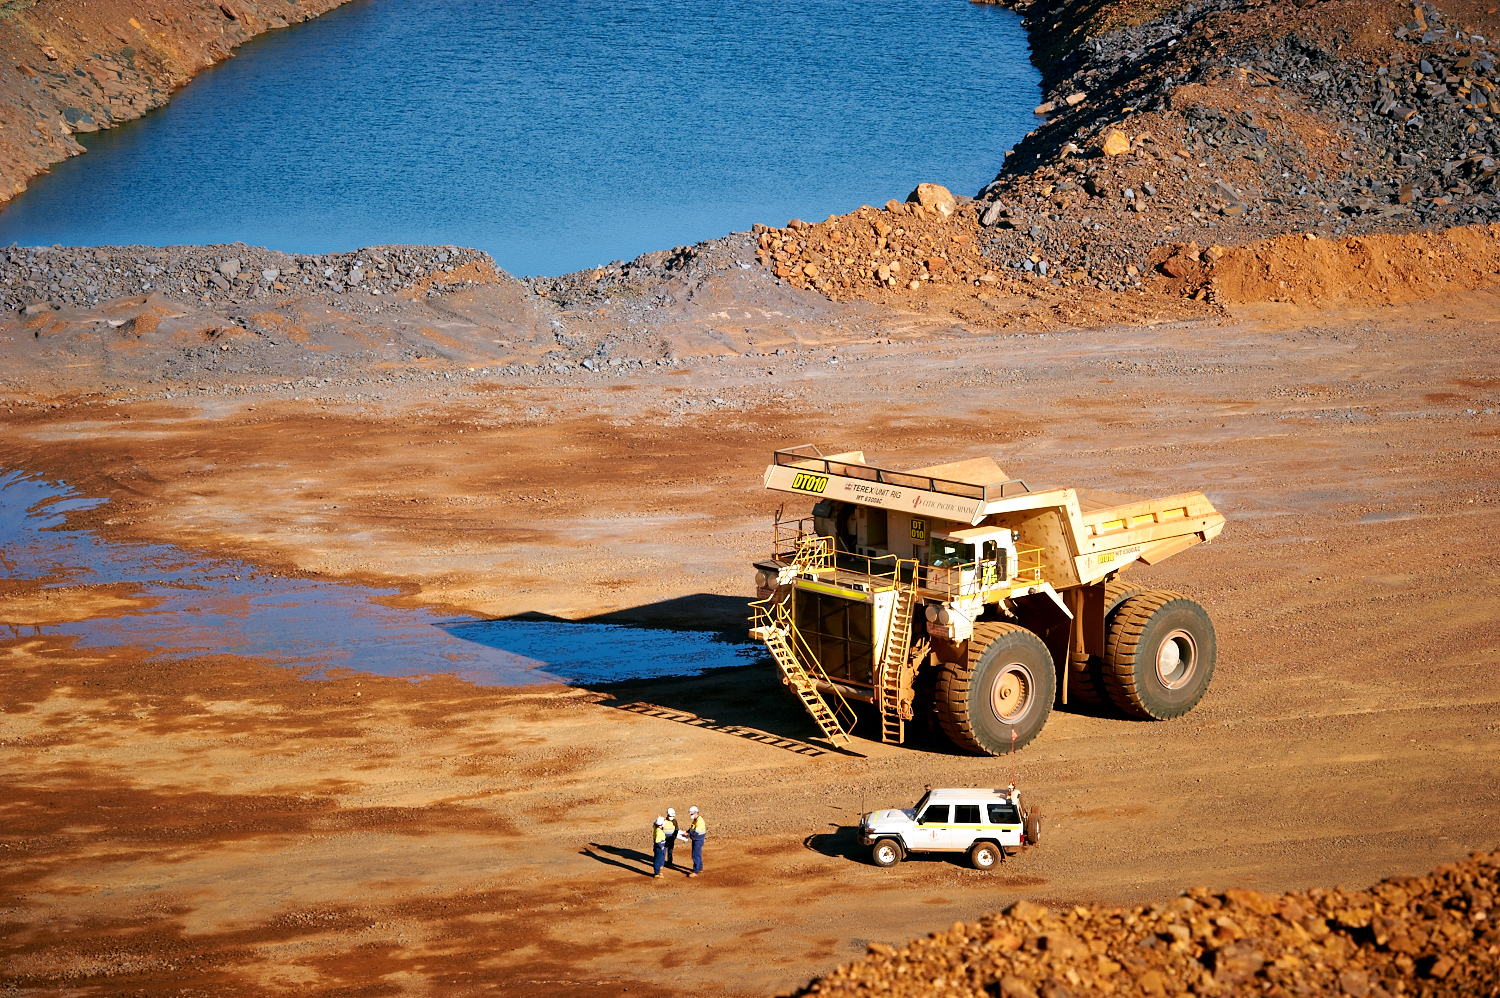 Fremskreden gå ind med undtagelse af The 6 Biggest Mining Companies in Australia | iseekplant